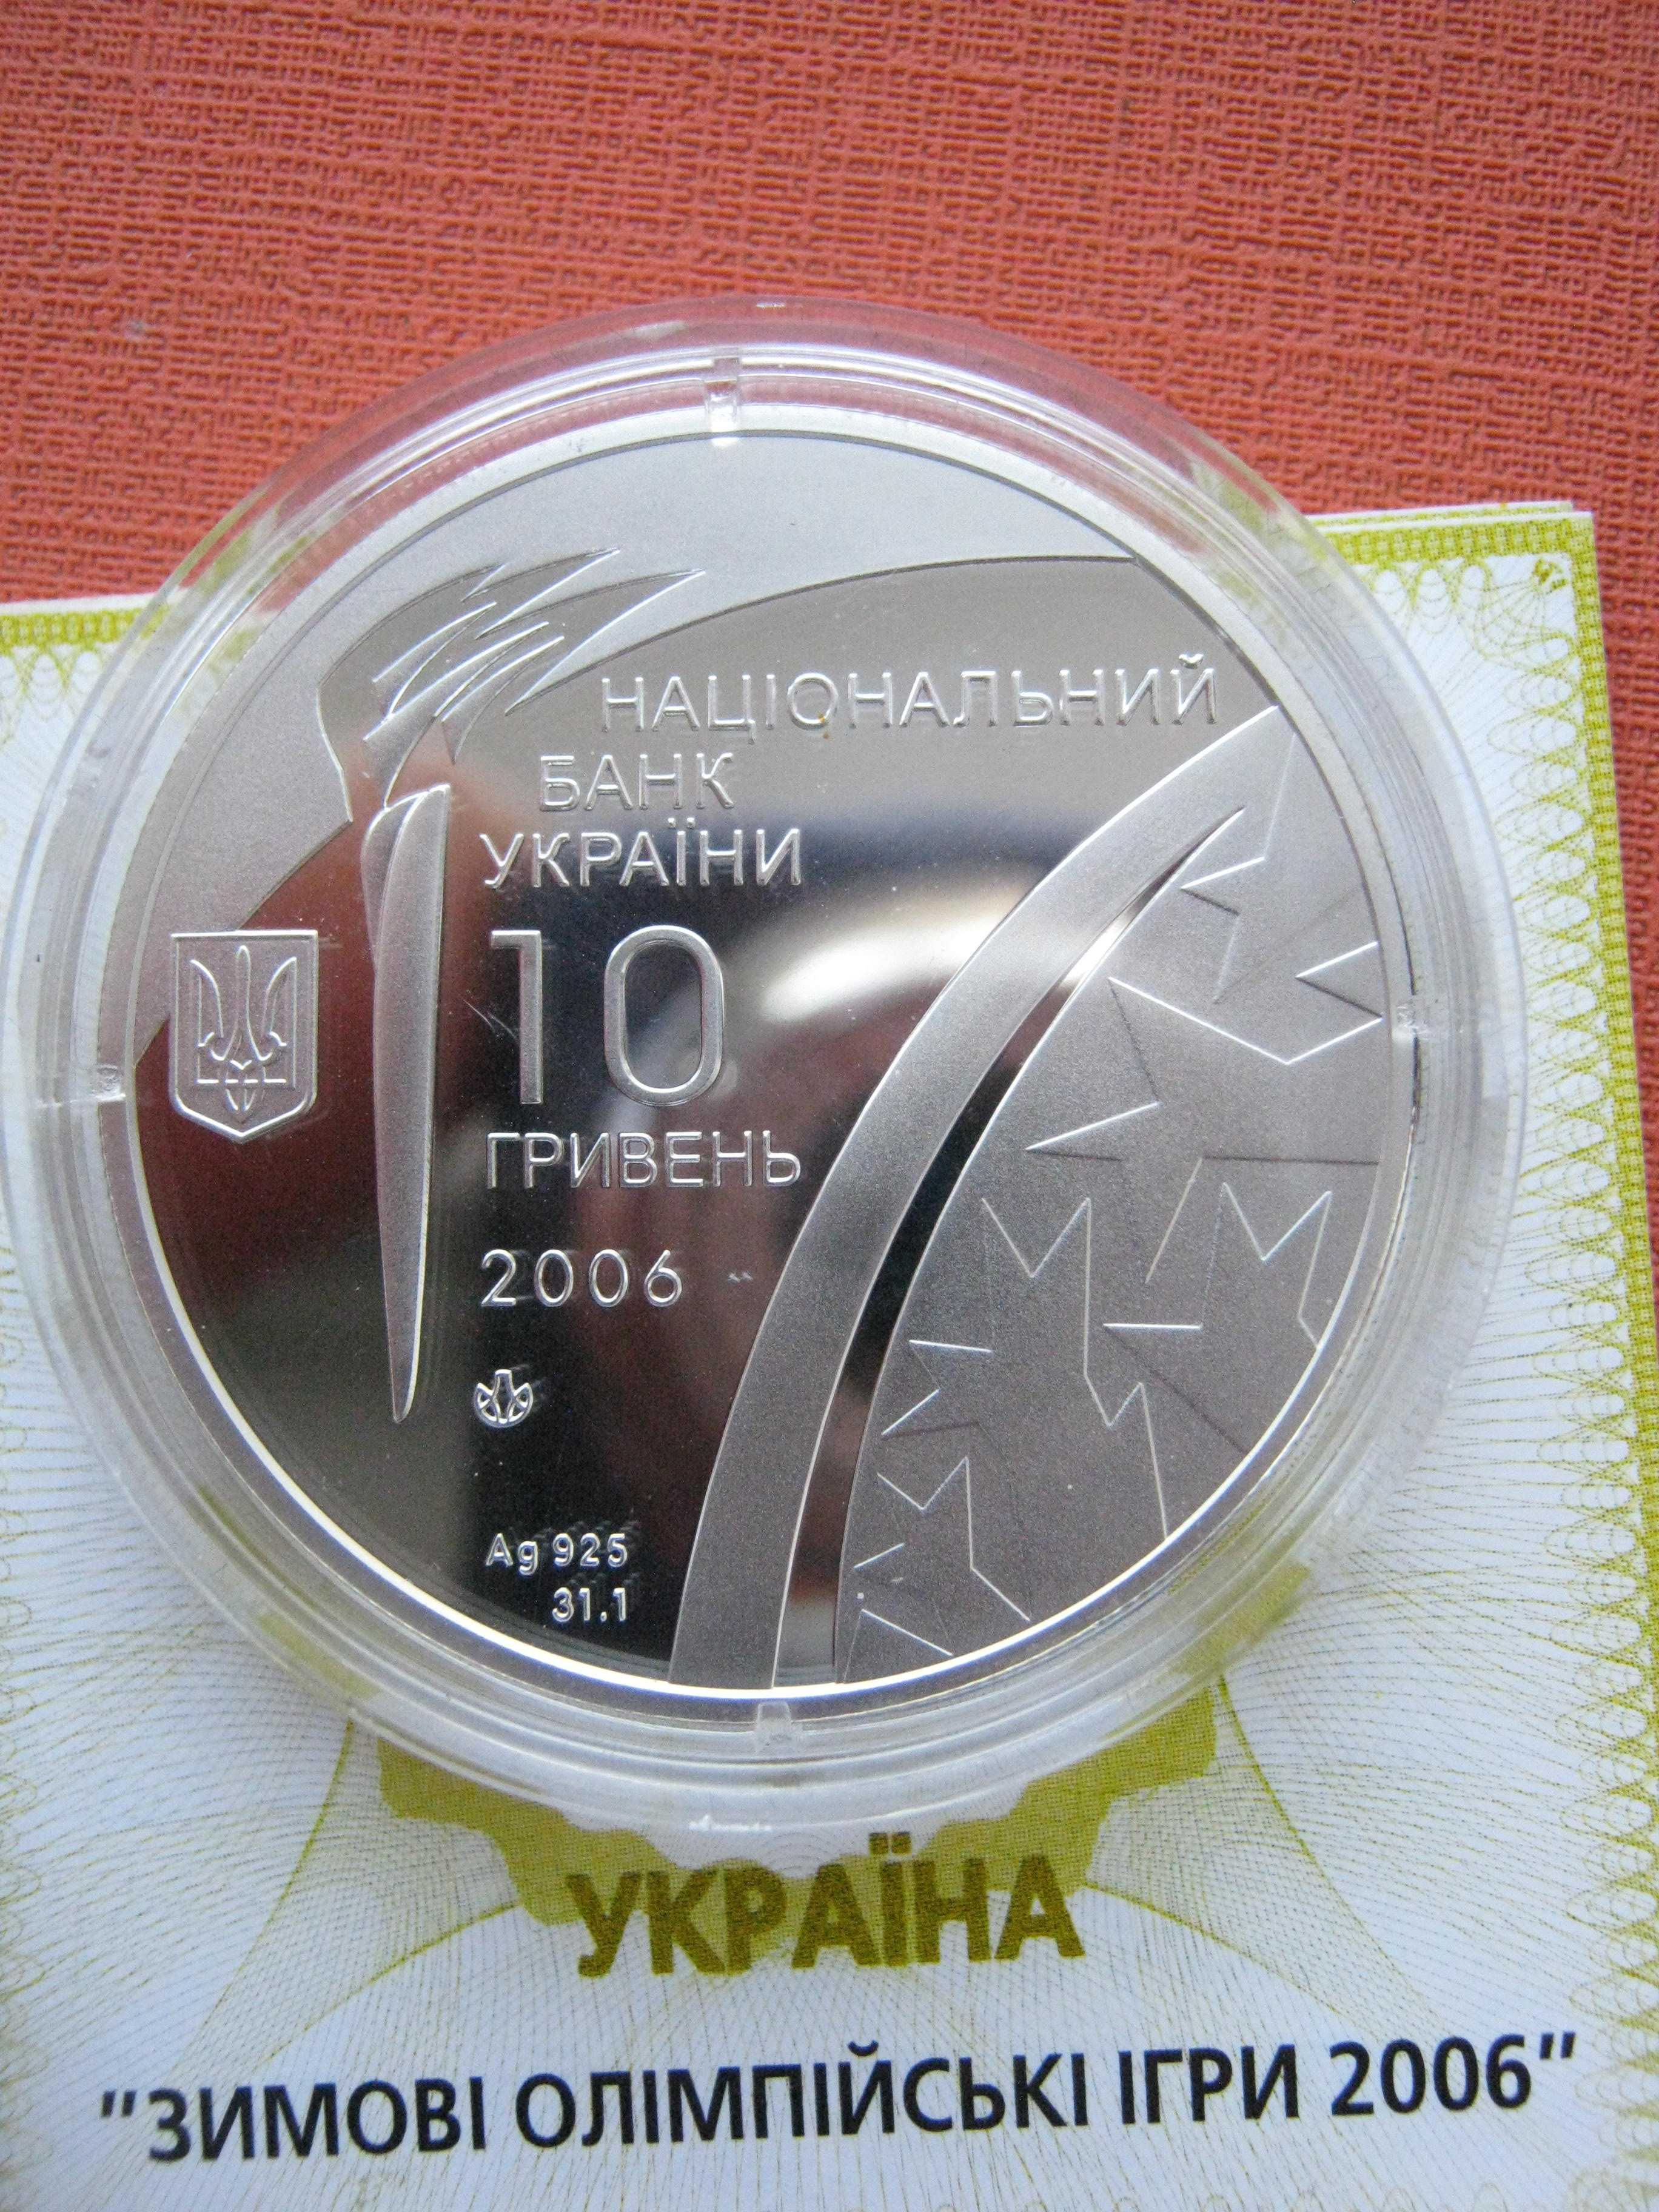 10 гривень 2006 року ,,Зимові олімпійські ігри" ( срібна монета ).